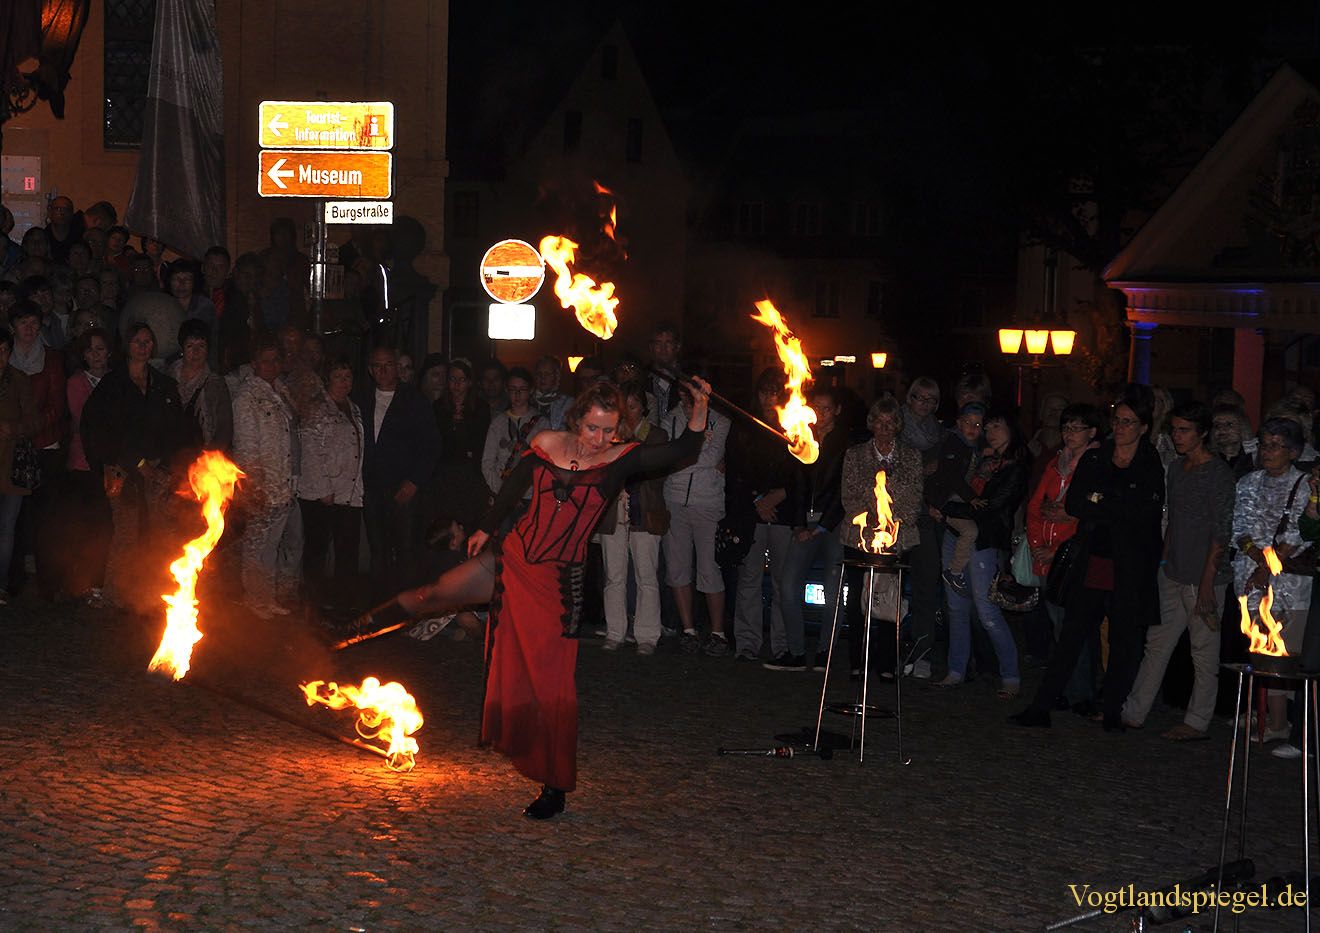 Jubiläums-Kulturnacht zieht 1200 Greizer in ihren Bann